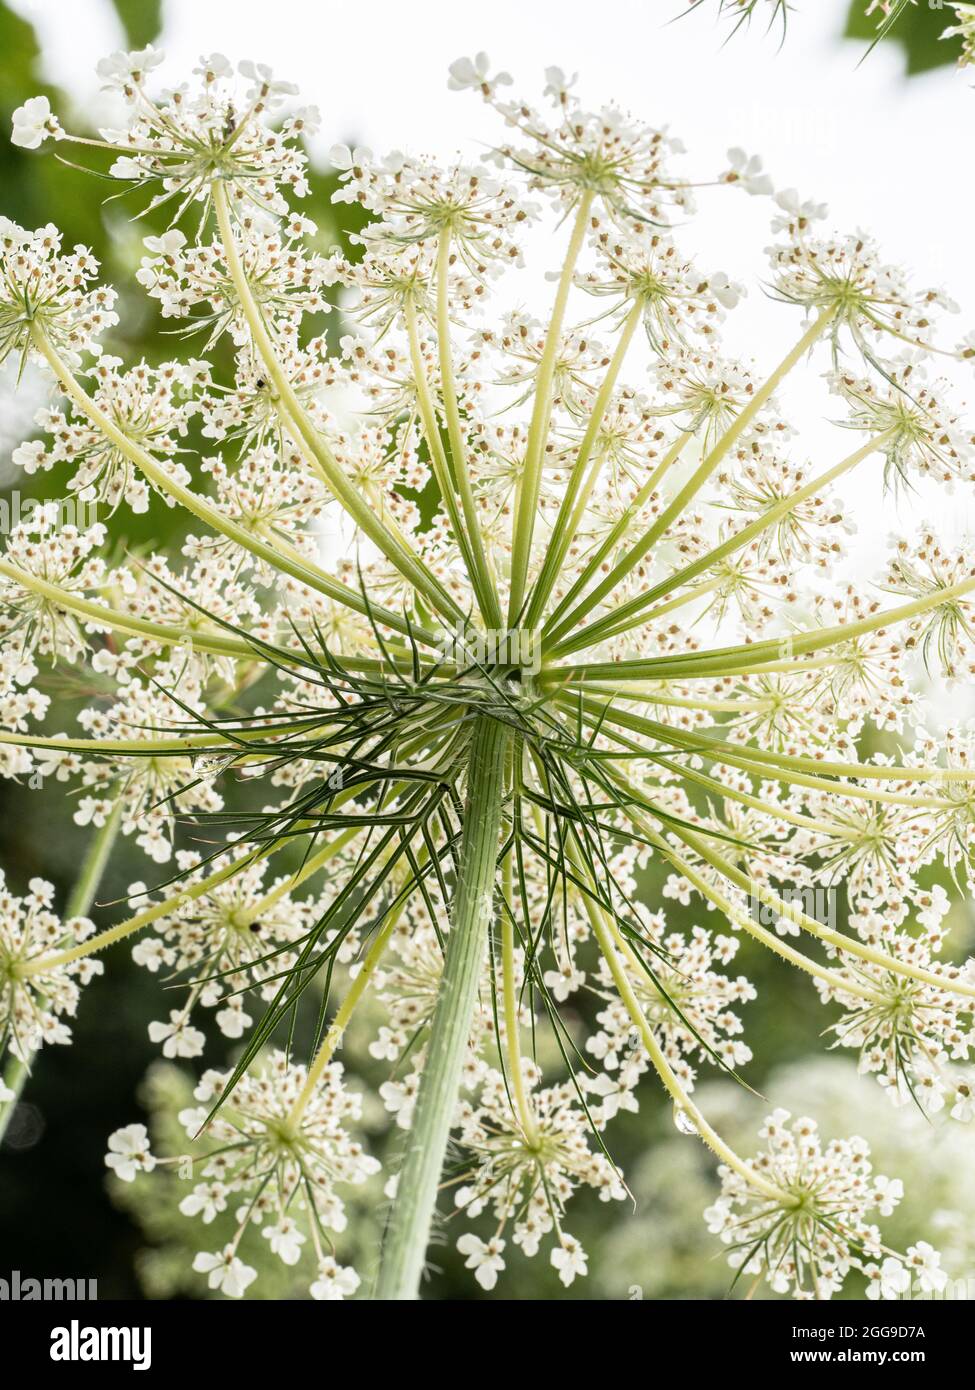 Eine Nahaufnahme der Unterseite einer wilden Karottenblume gegen das Licht, die das zarte Spitzenmuster der Blüten zeigt Stockfoto